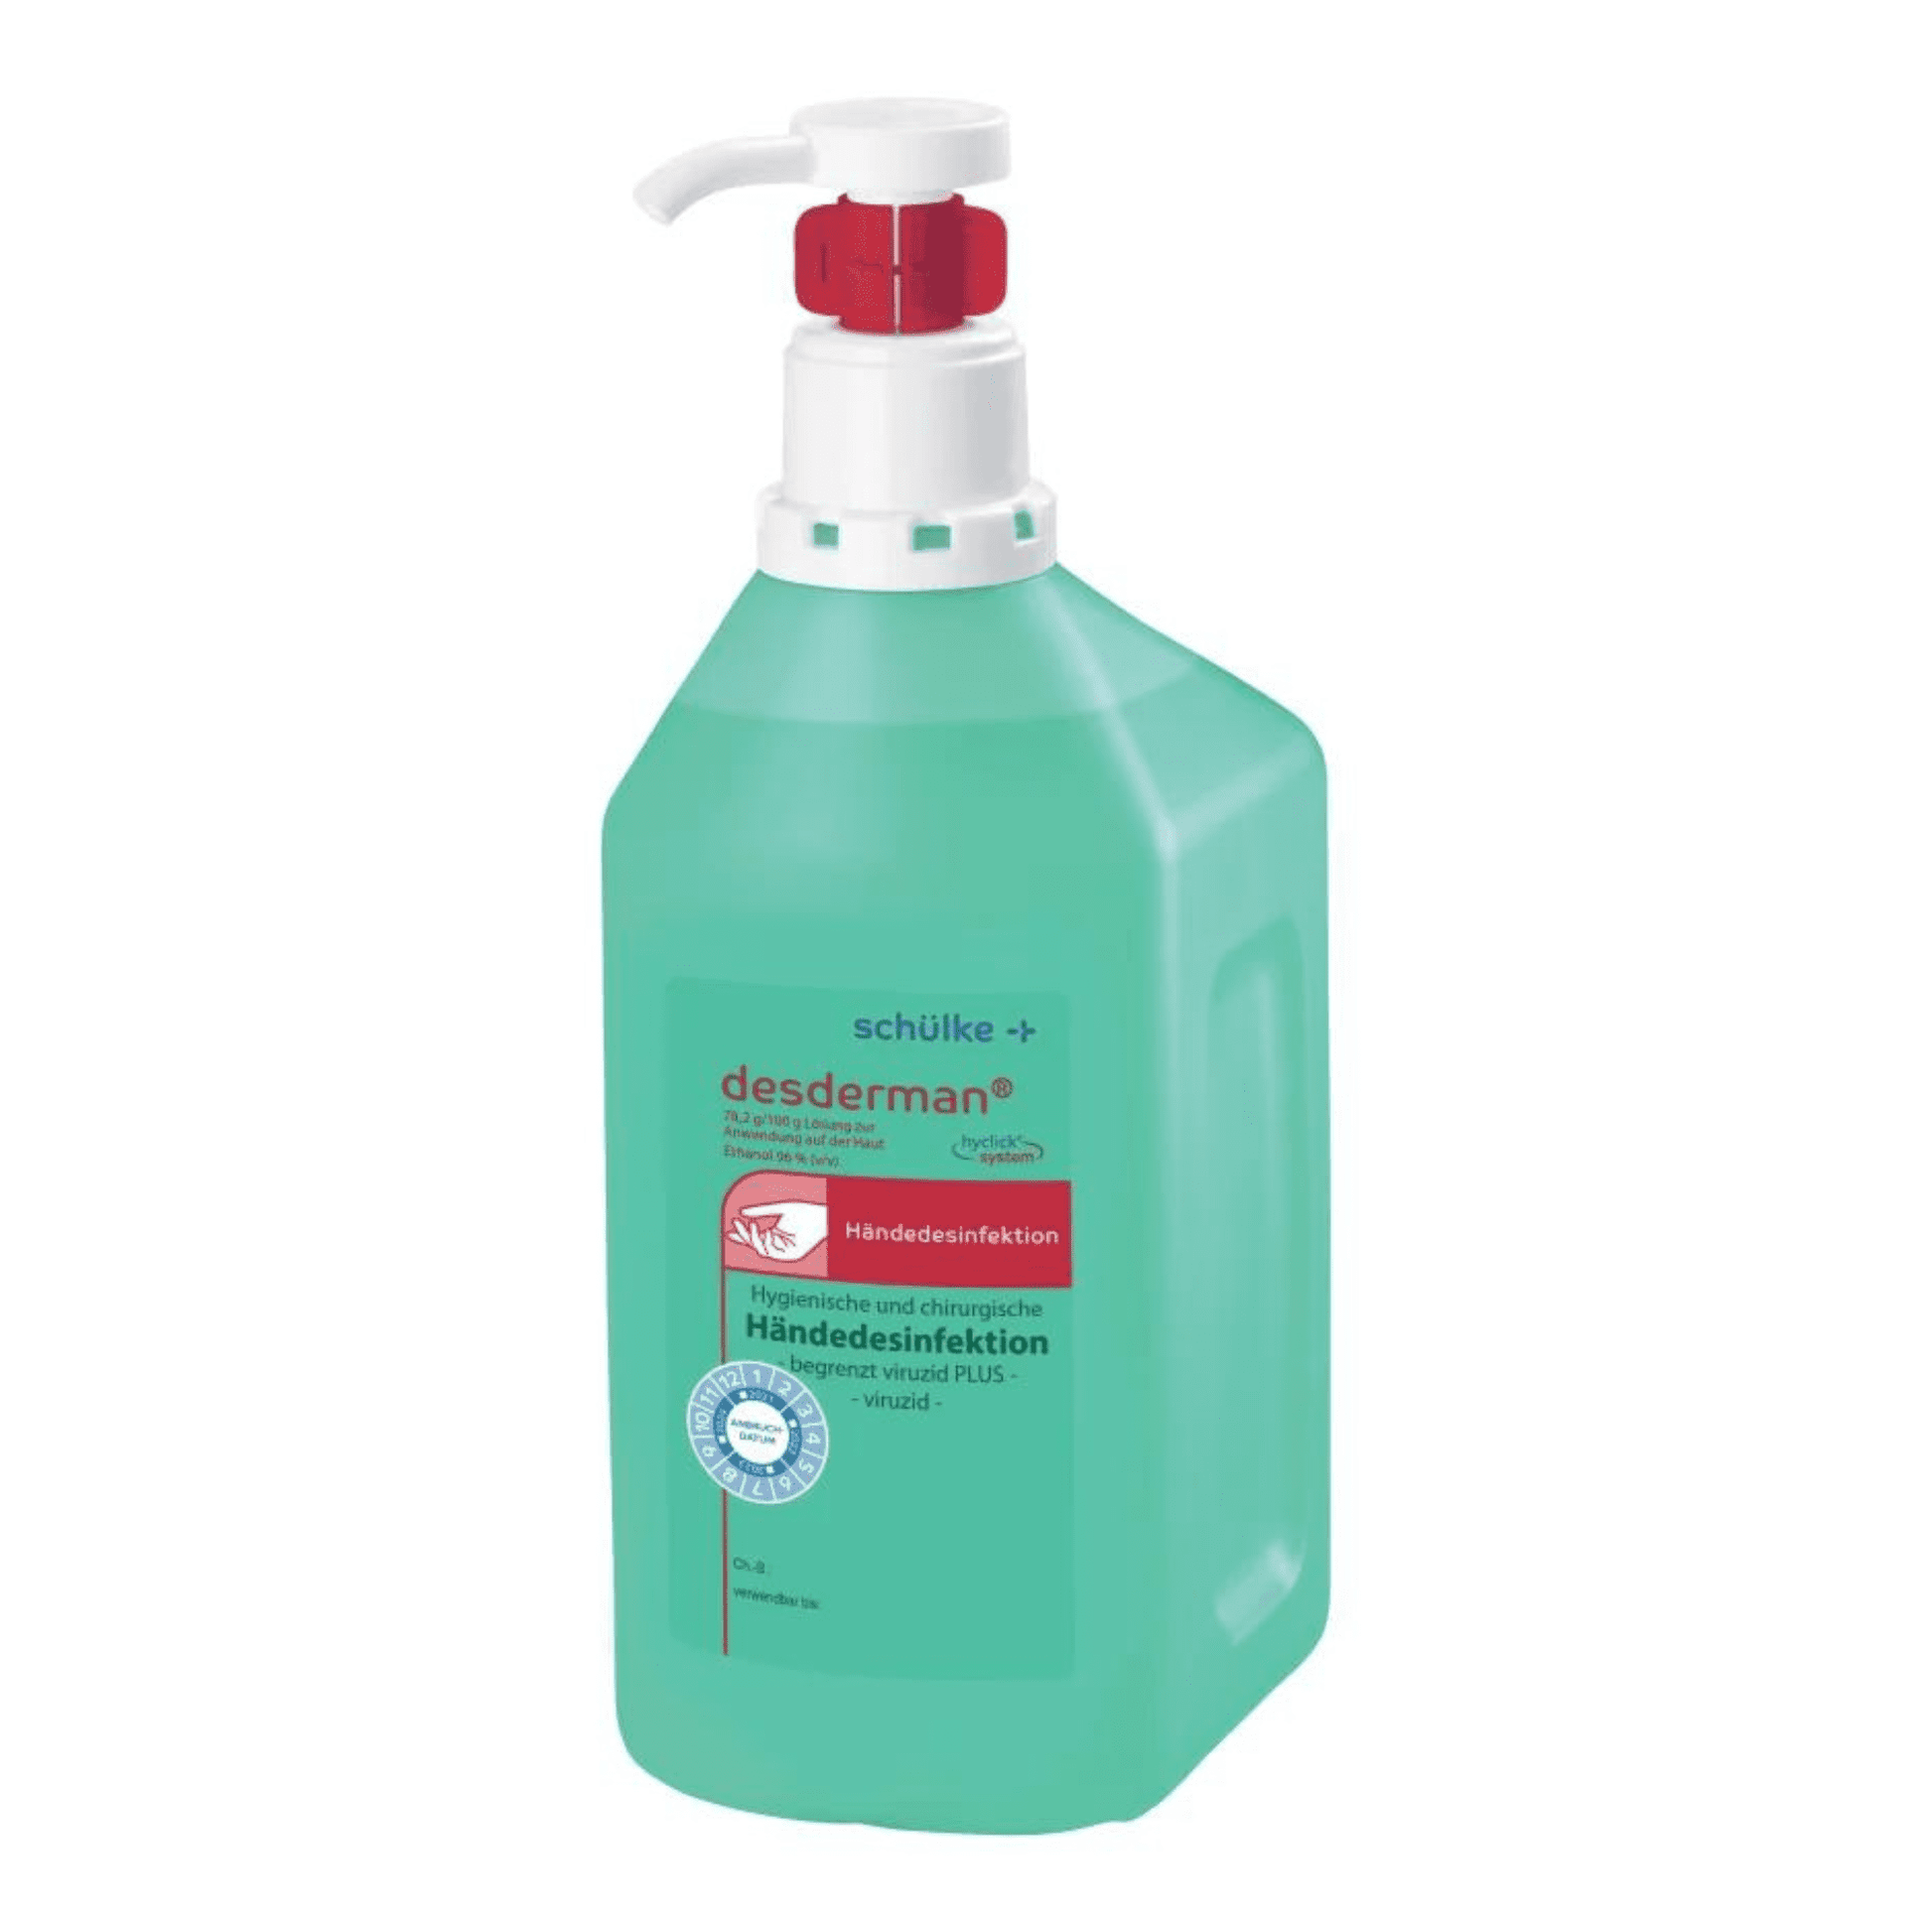 Eine Flasche des grünen Schülke desderman® Händedesinfektionsmittels mit einem rot-weißen Pumpspender. Auf dem Etikett sind Text und Logos zu finden, die auf die medizinische Verwendbarkeit, die Viruzid-Zertifizierung und das RKI-Zertifikat hinweisen.